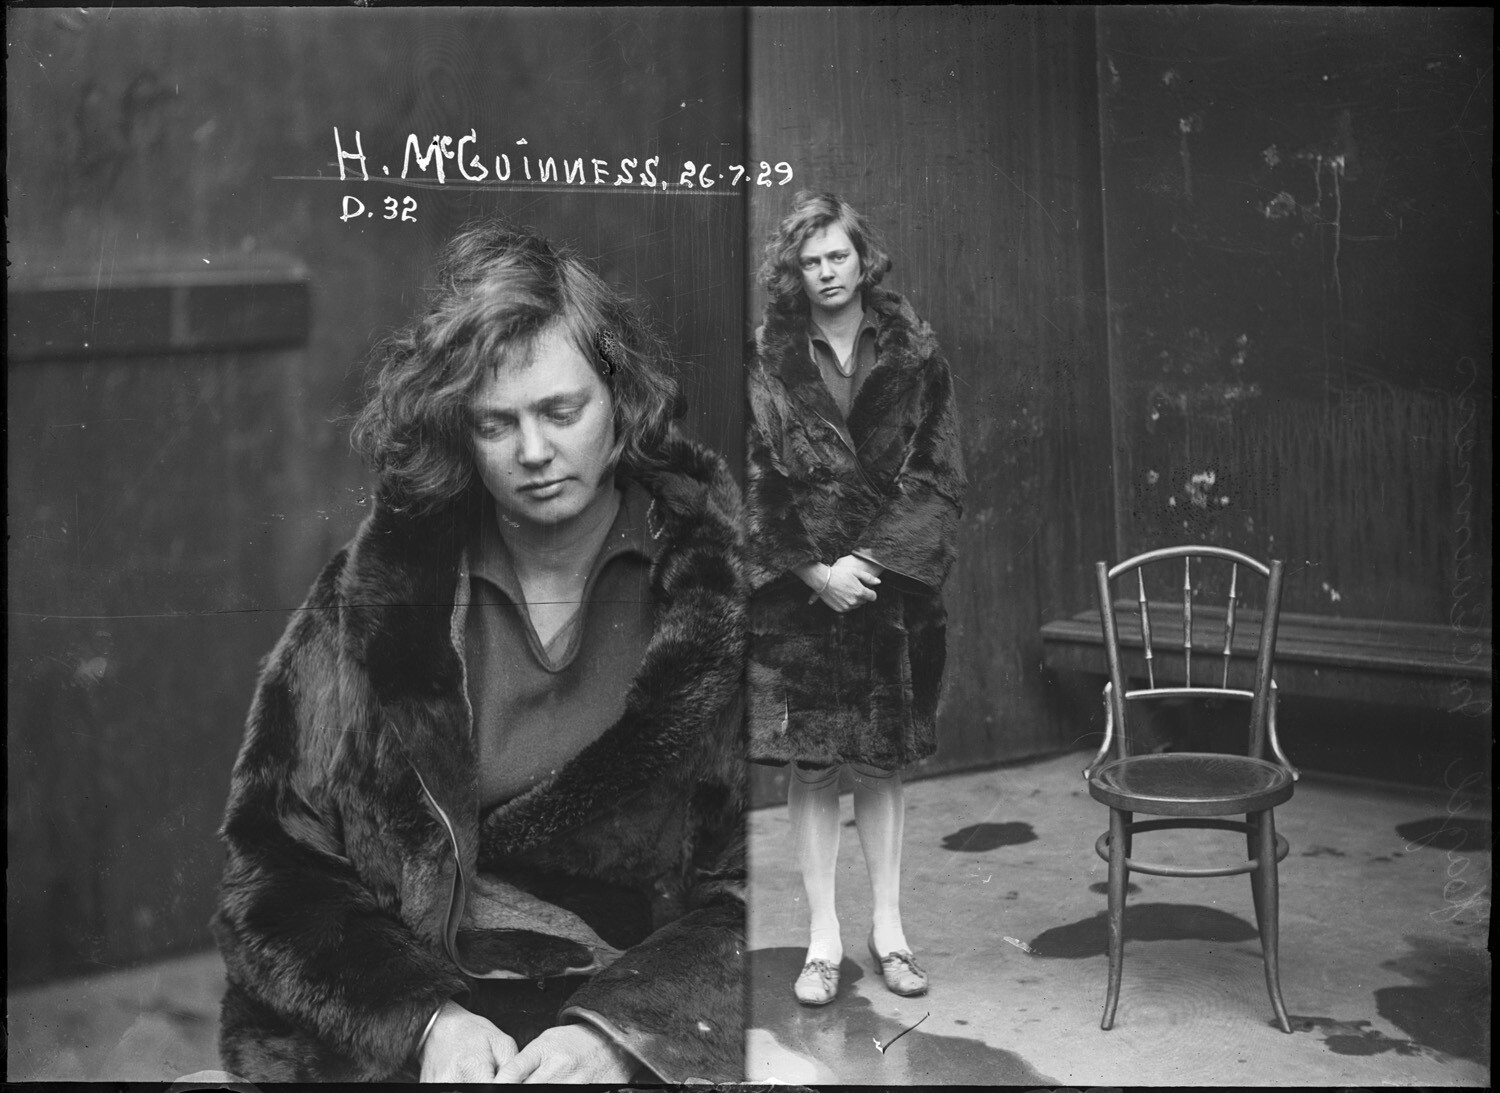 Хейзел Макгиннесс, обвинена вместе со своей матерью в незаконном хранении кокаина (в значительных количествах), 1929 год. Архив судебной фотографии полиции Нового Южного Уэльса